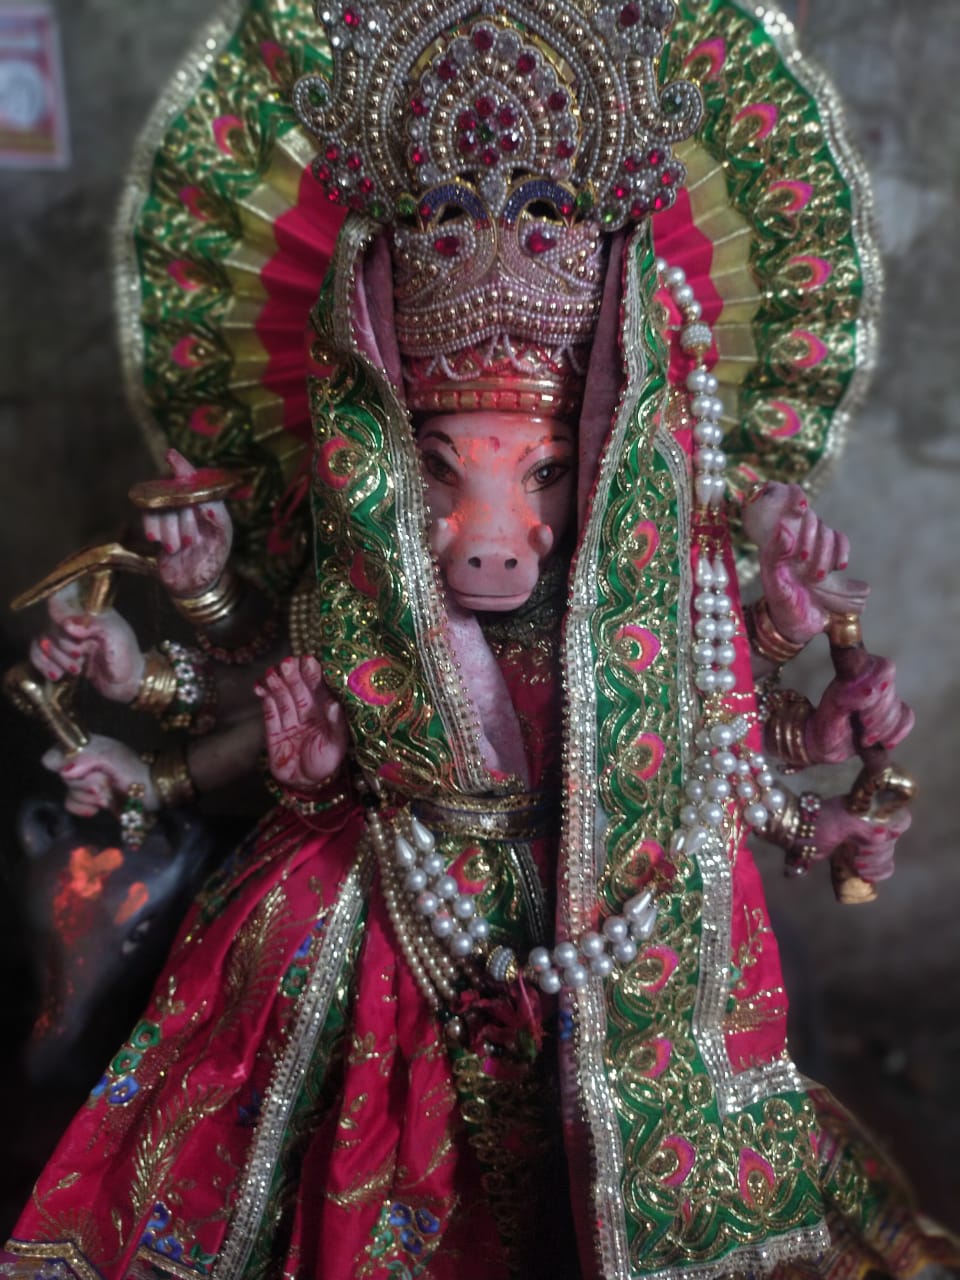 Devidhura: अध्यात्म के साथ रोमांच भी चाहते हैं तो चले आये देवीधुरा के माँ बाराही देवी मंदिर, जहाँ मिलती है आत्मिक शांति